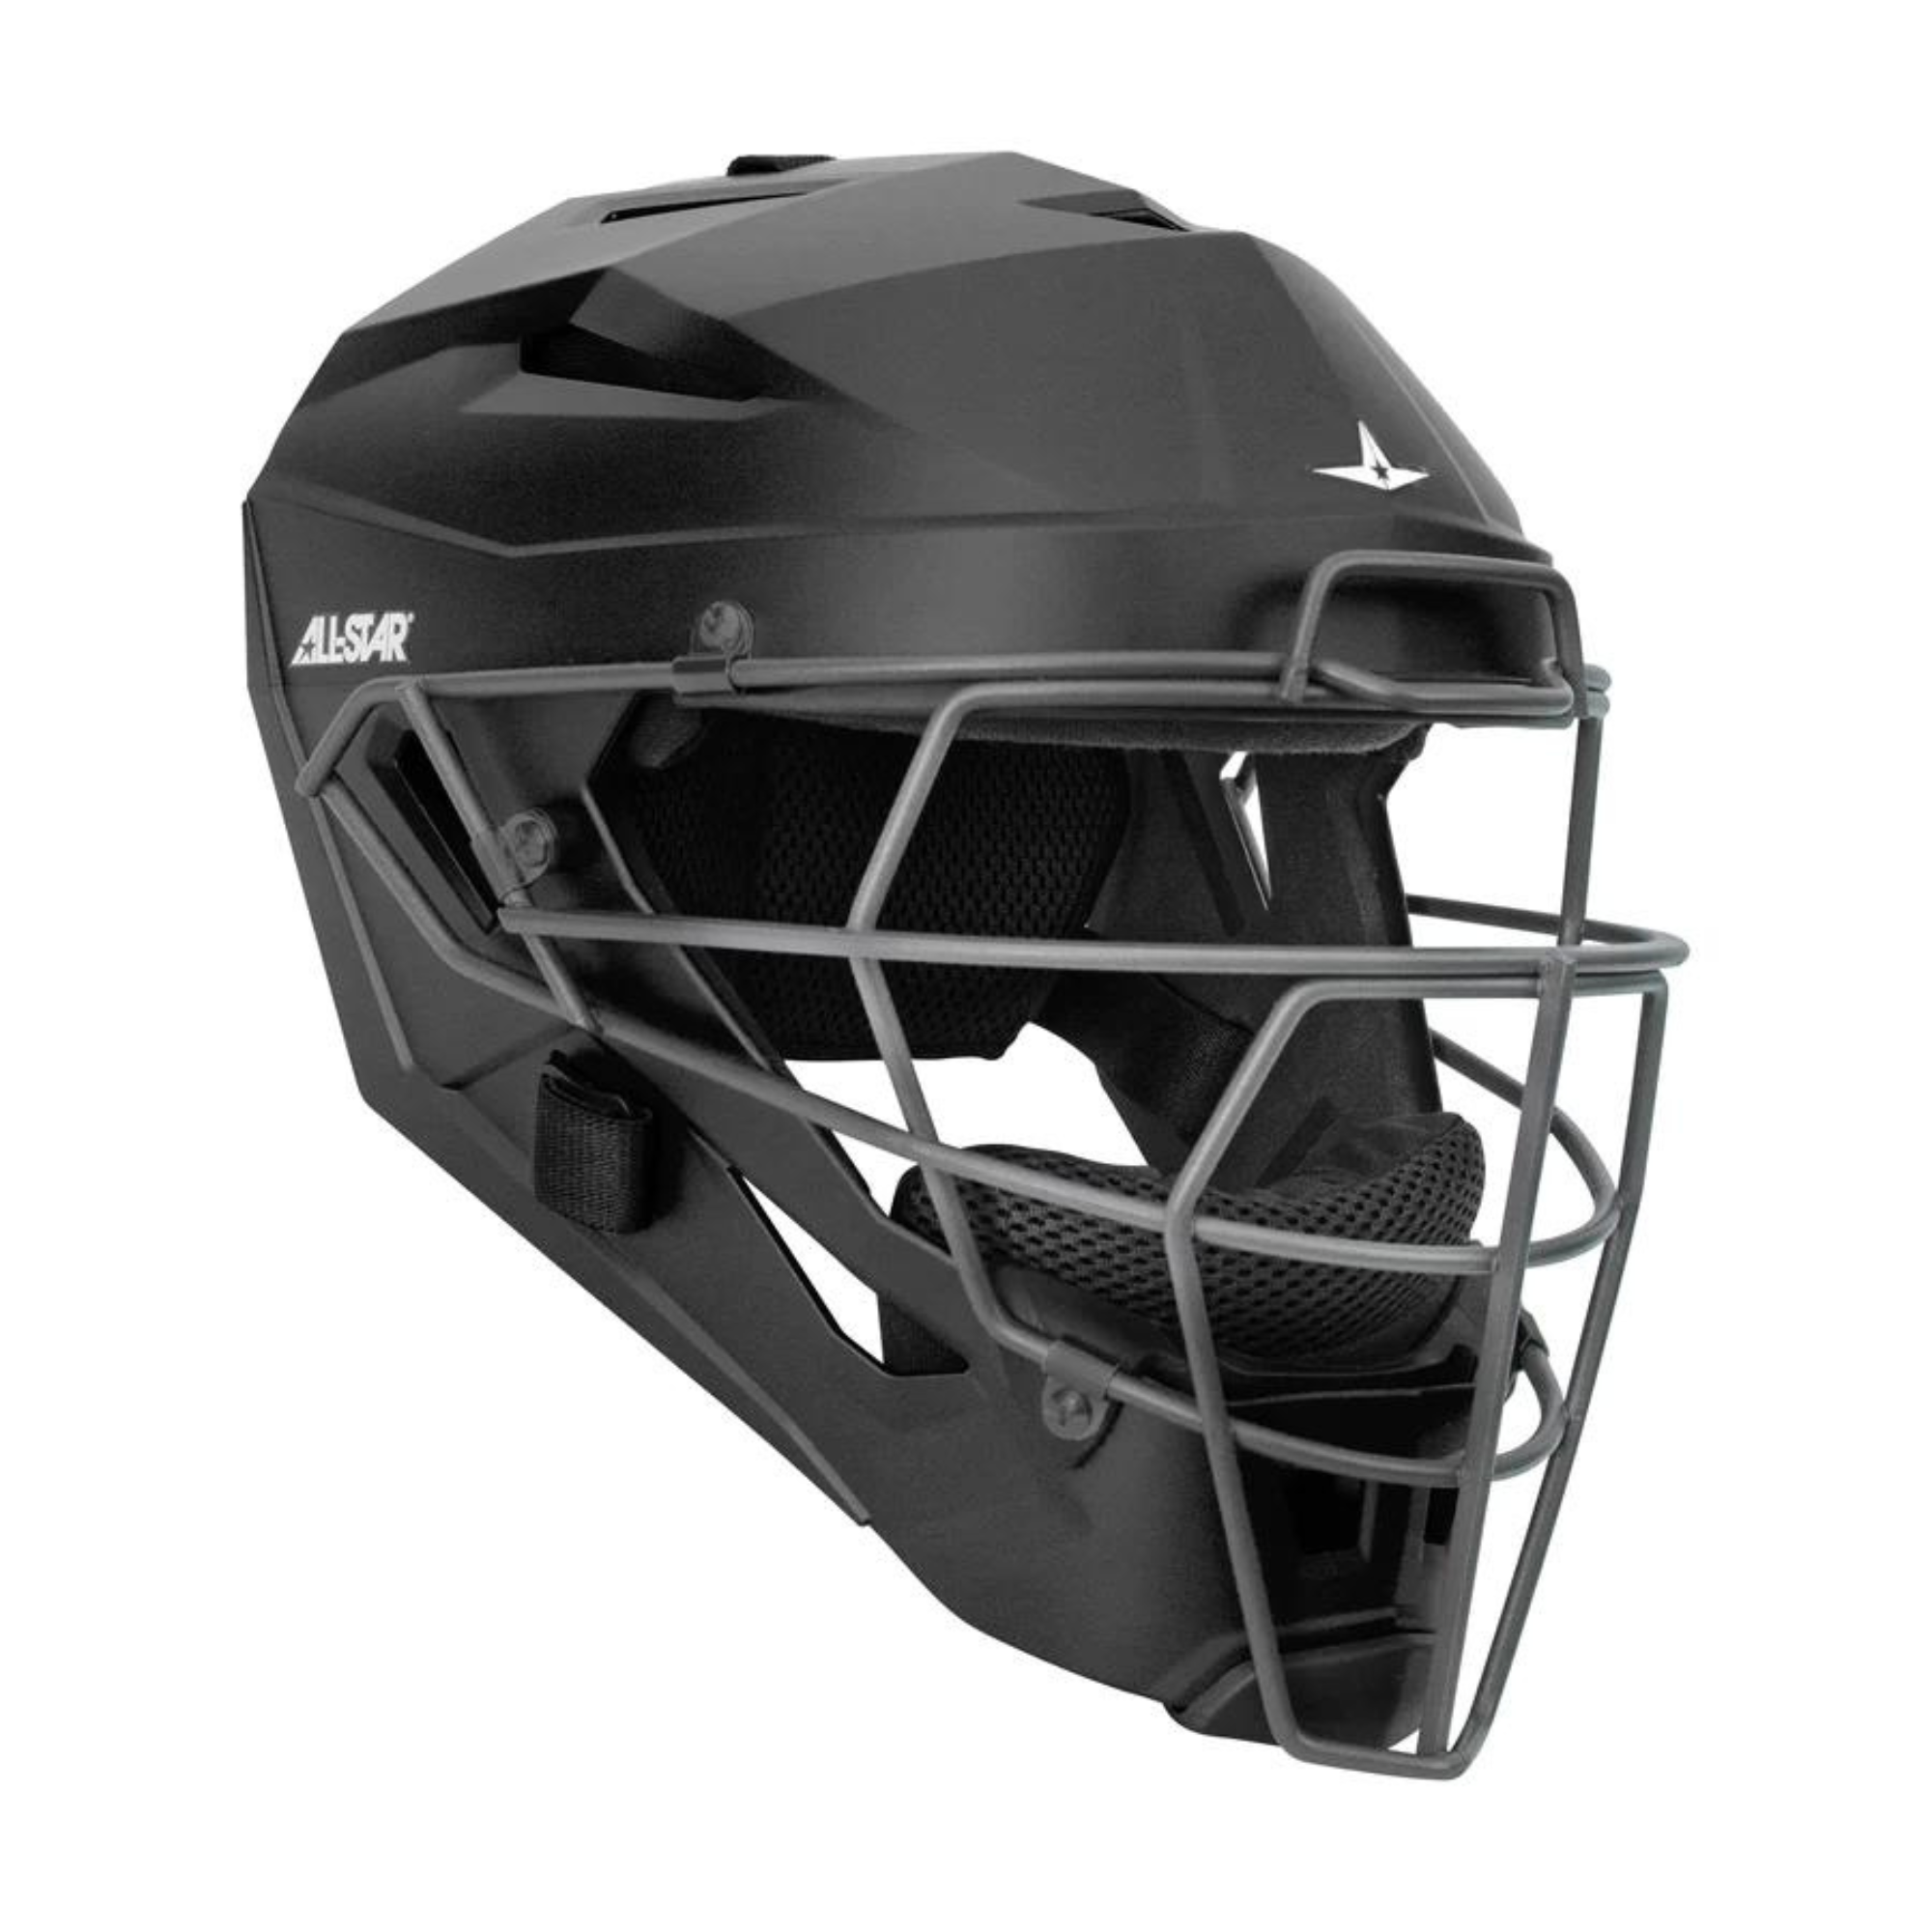 All-Star MVP5 Series Helmet w/Deflexion Tech/Matte